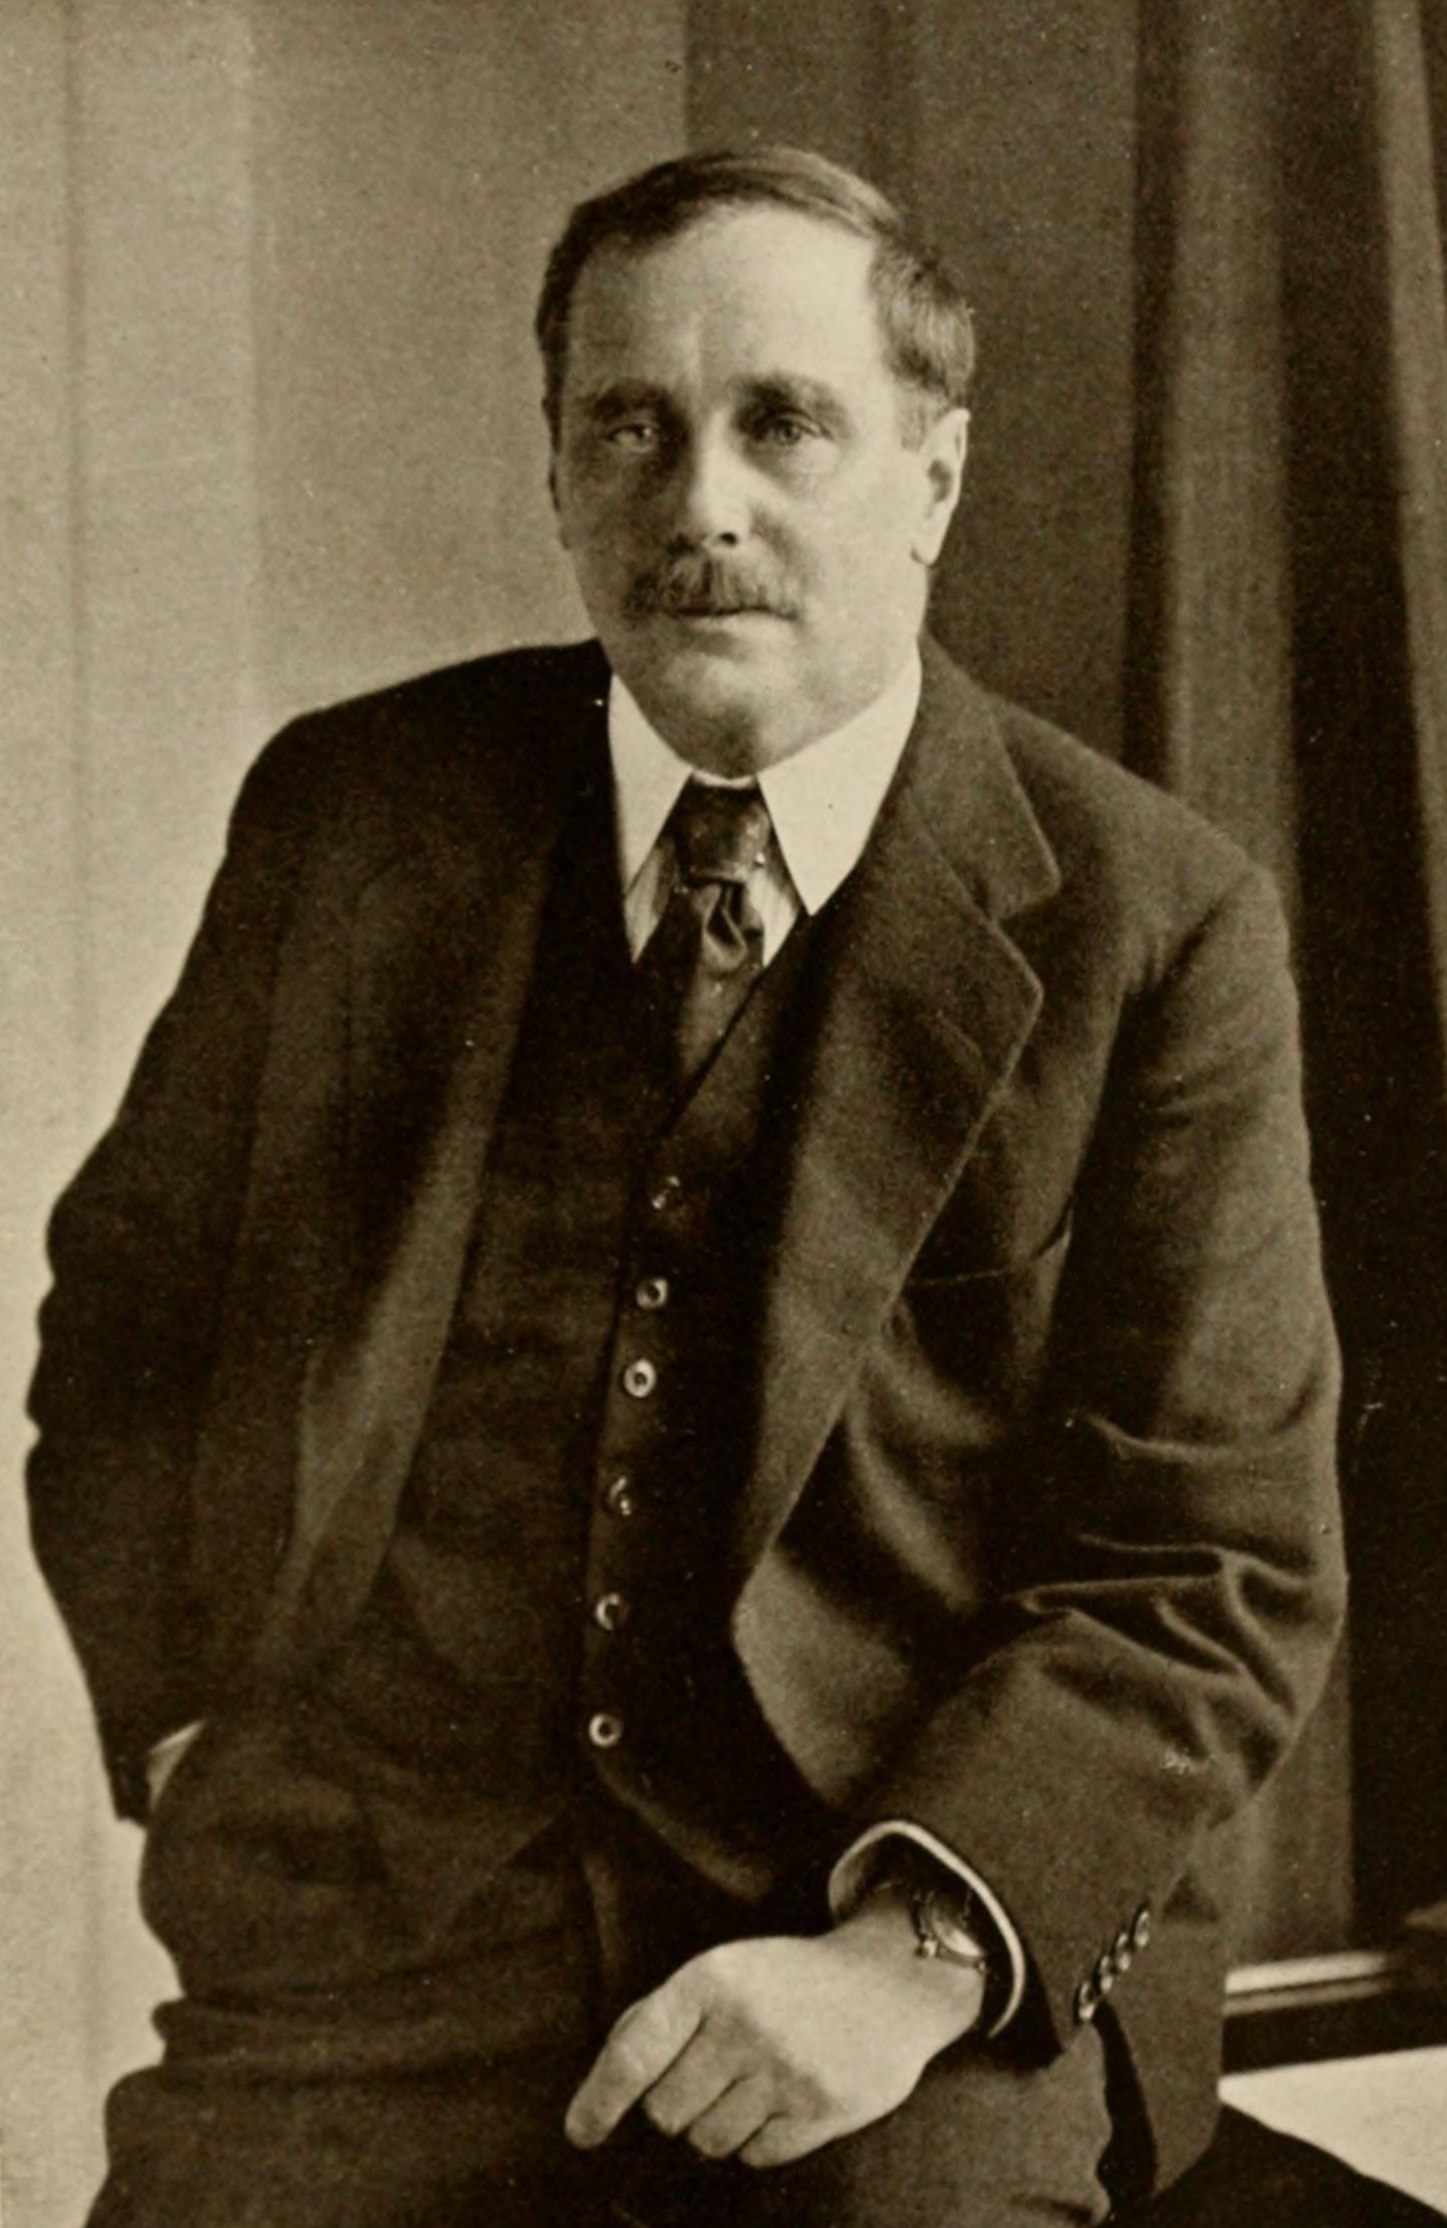 Retrato de H. G. Wells - Crédito: Autor Desconhecido / Domínio Público / Wikimedia Commons